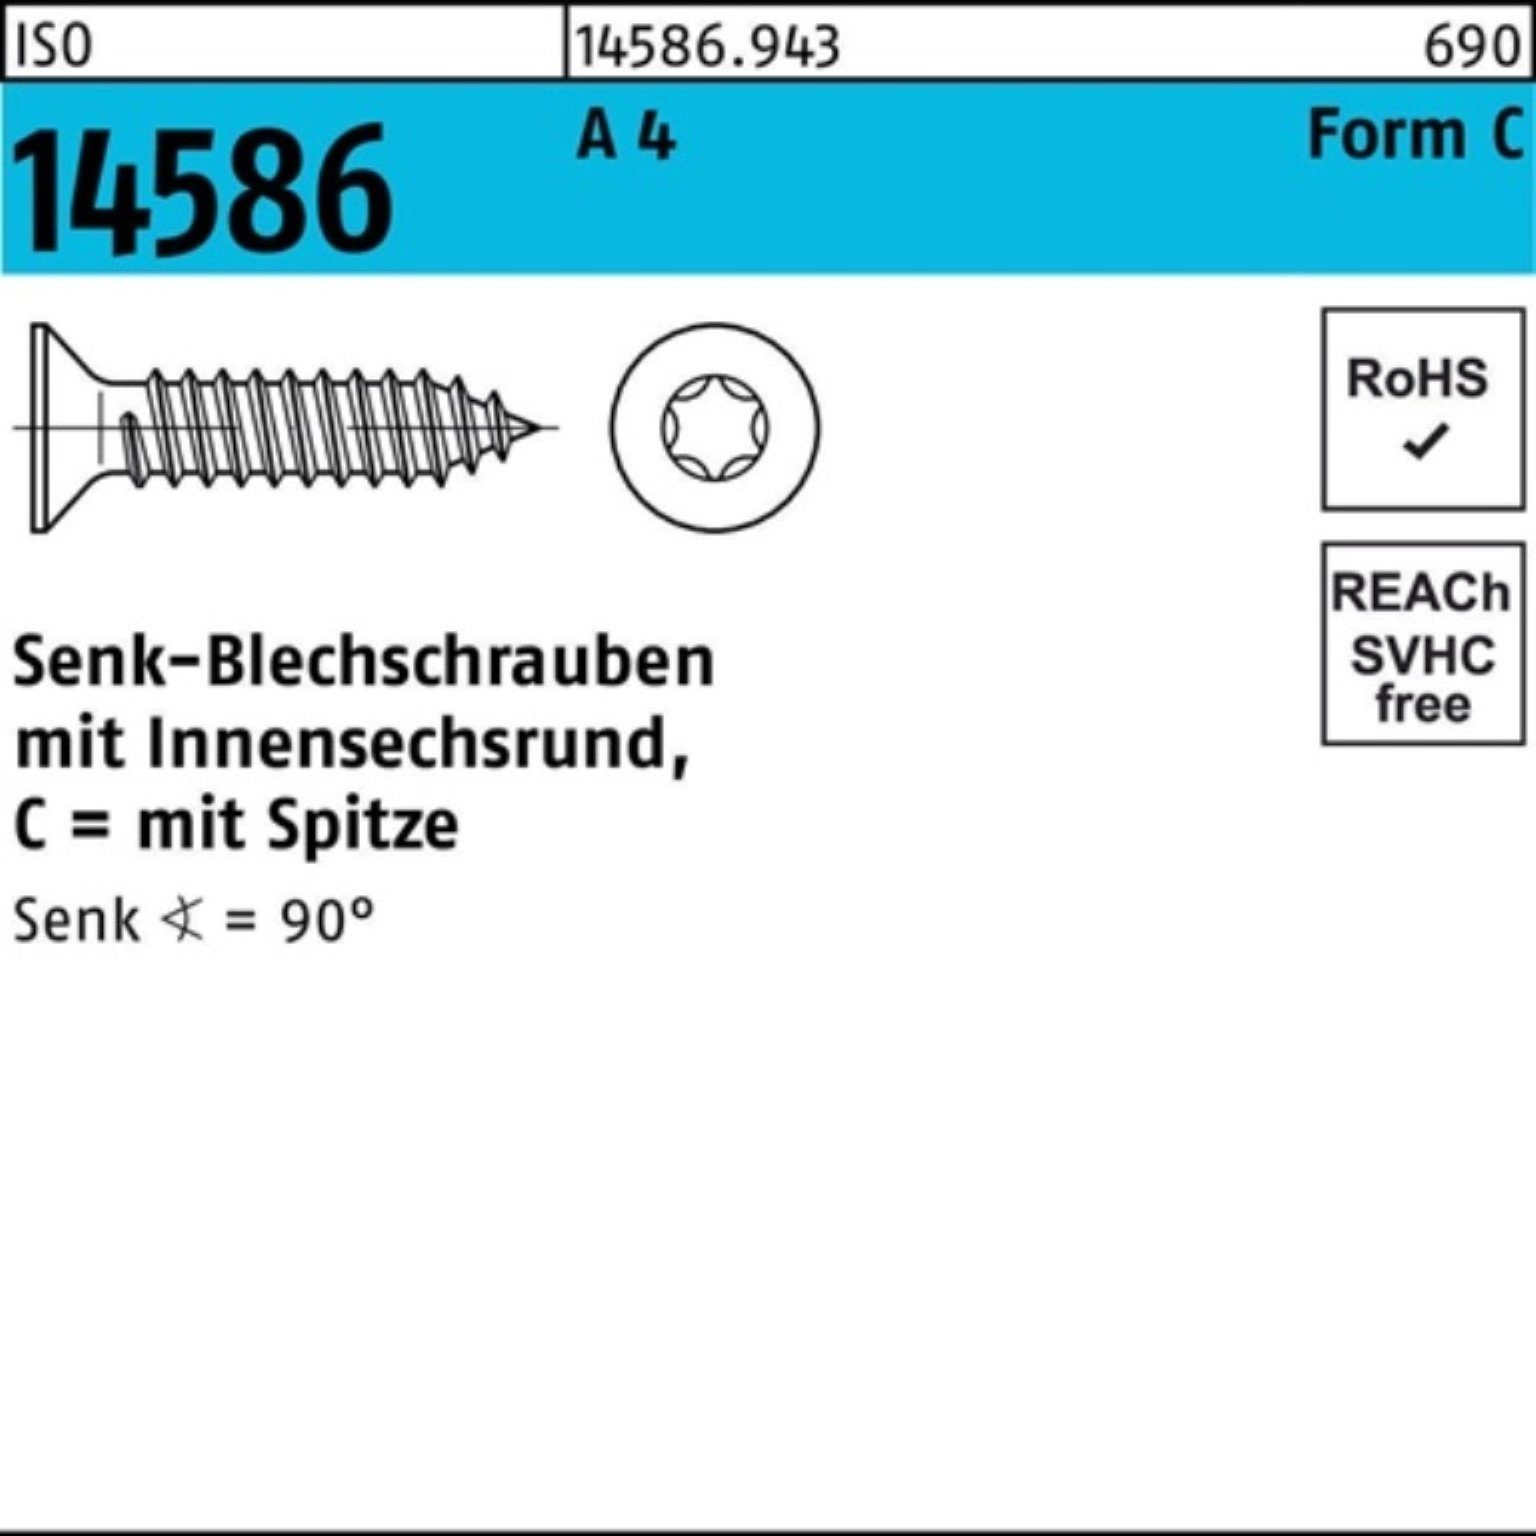 Reyher Schraube 250er Pack Senkblechschraube ISO 14586 ISR/Spitze 4,8x 50-T25 A 4 250